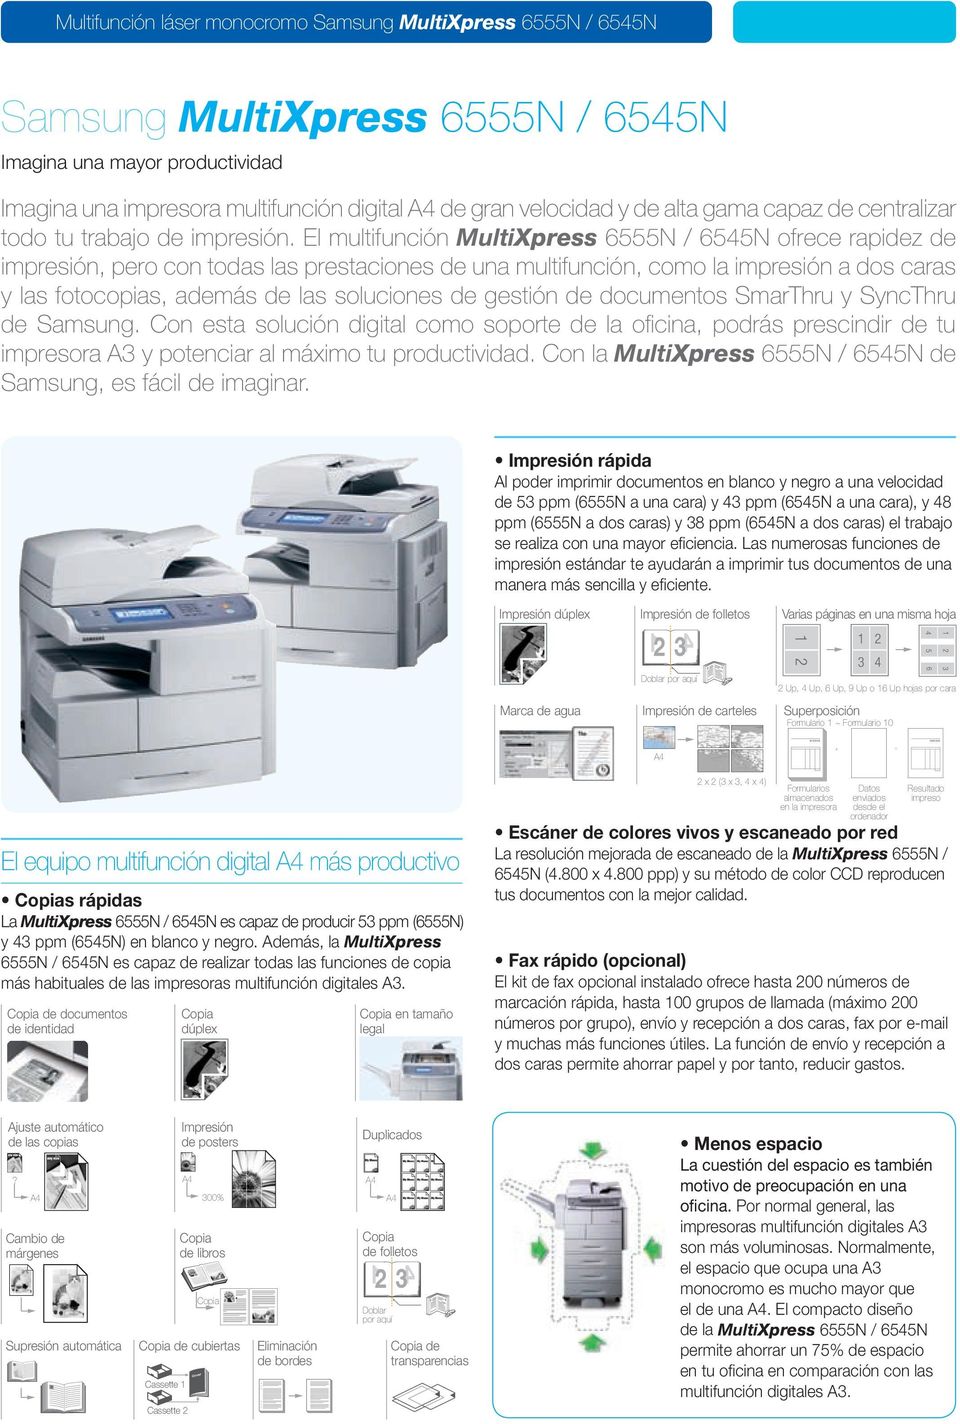 gestión de documentos SmarThru y SyncThru de Samsung. Con esta solución digital como soporte de la oficina, podrás prescindir de tu impresora 3 y potenciar al máximo tu productividad.